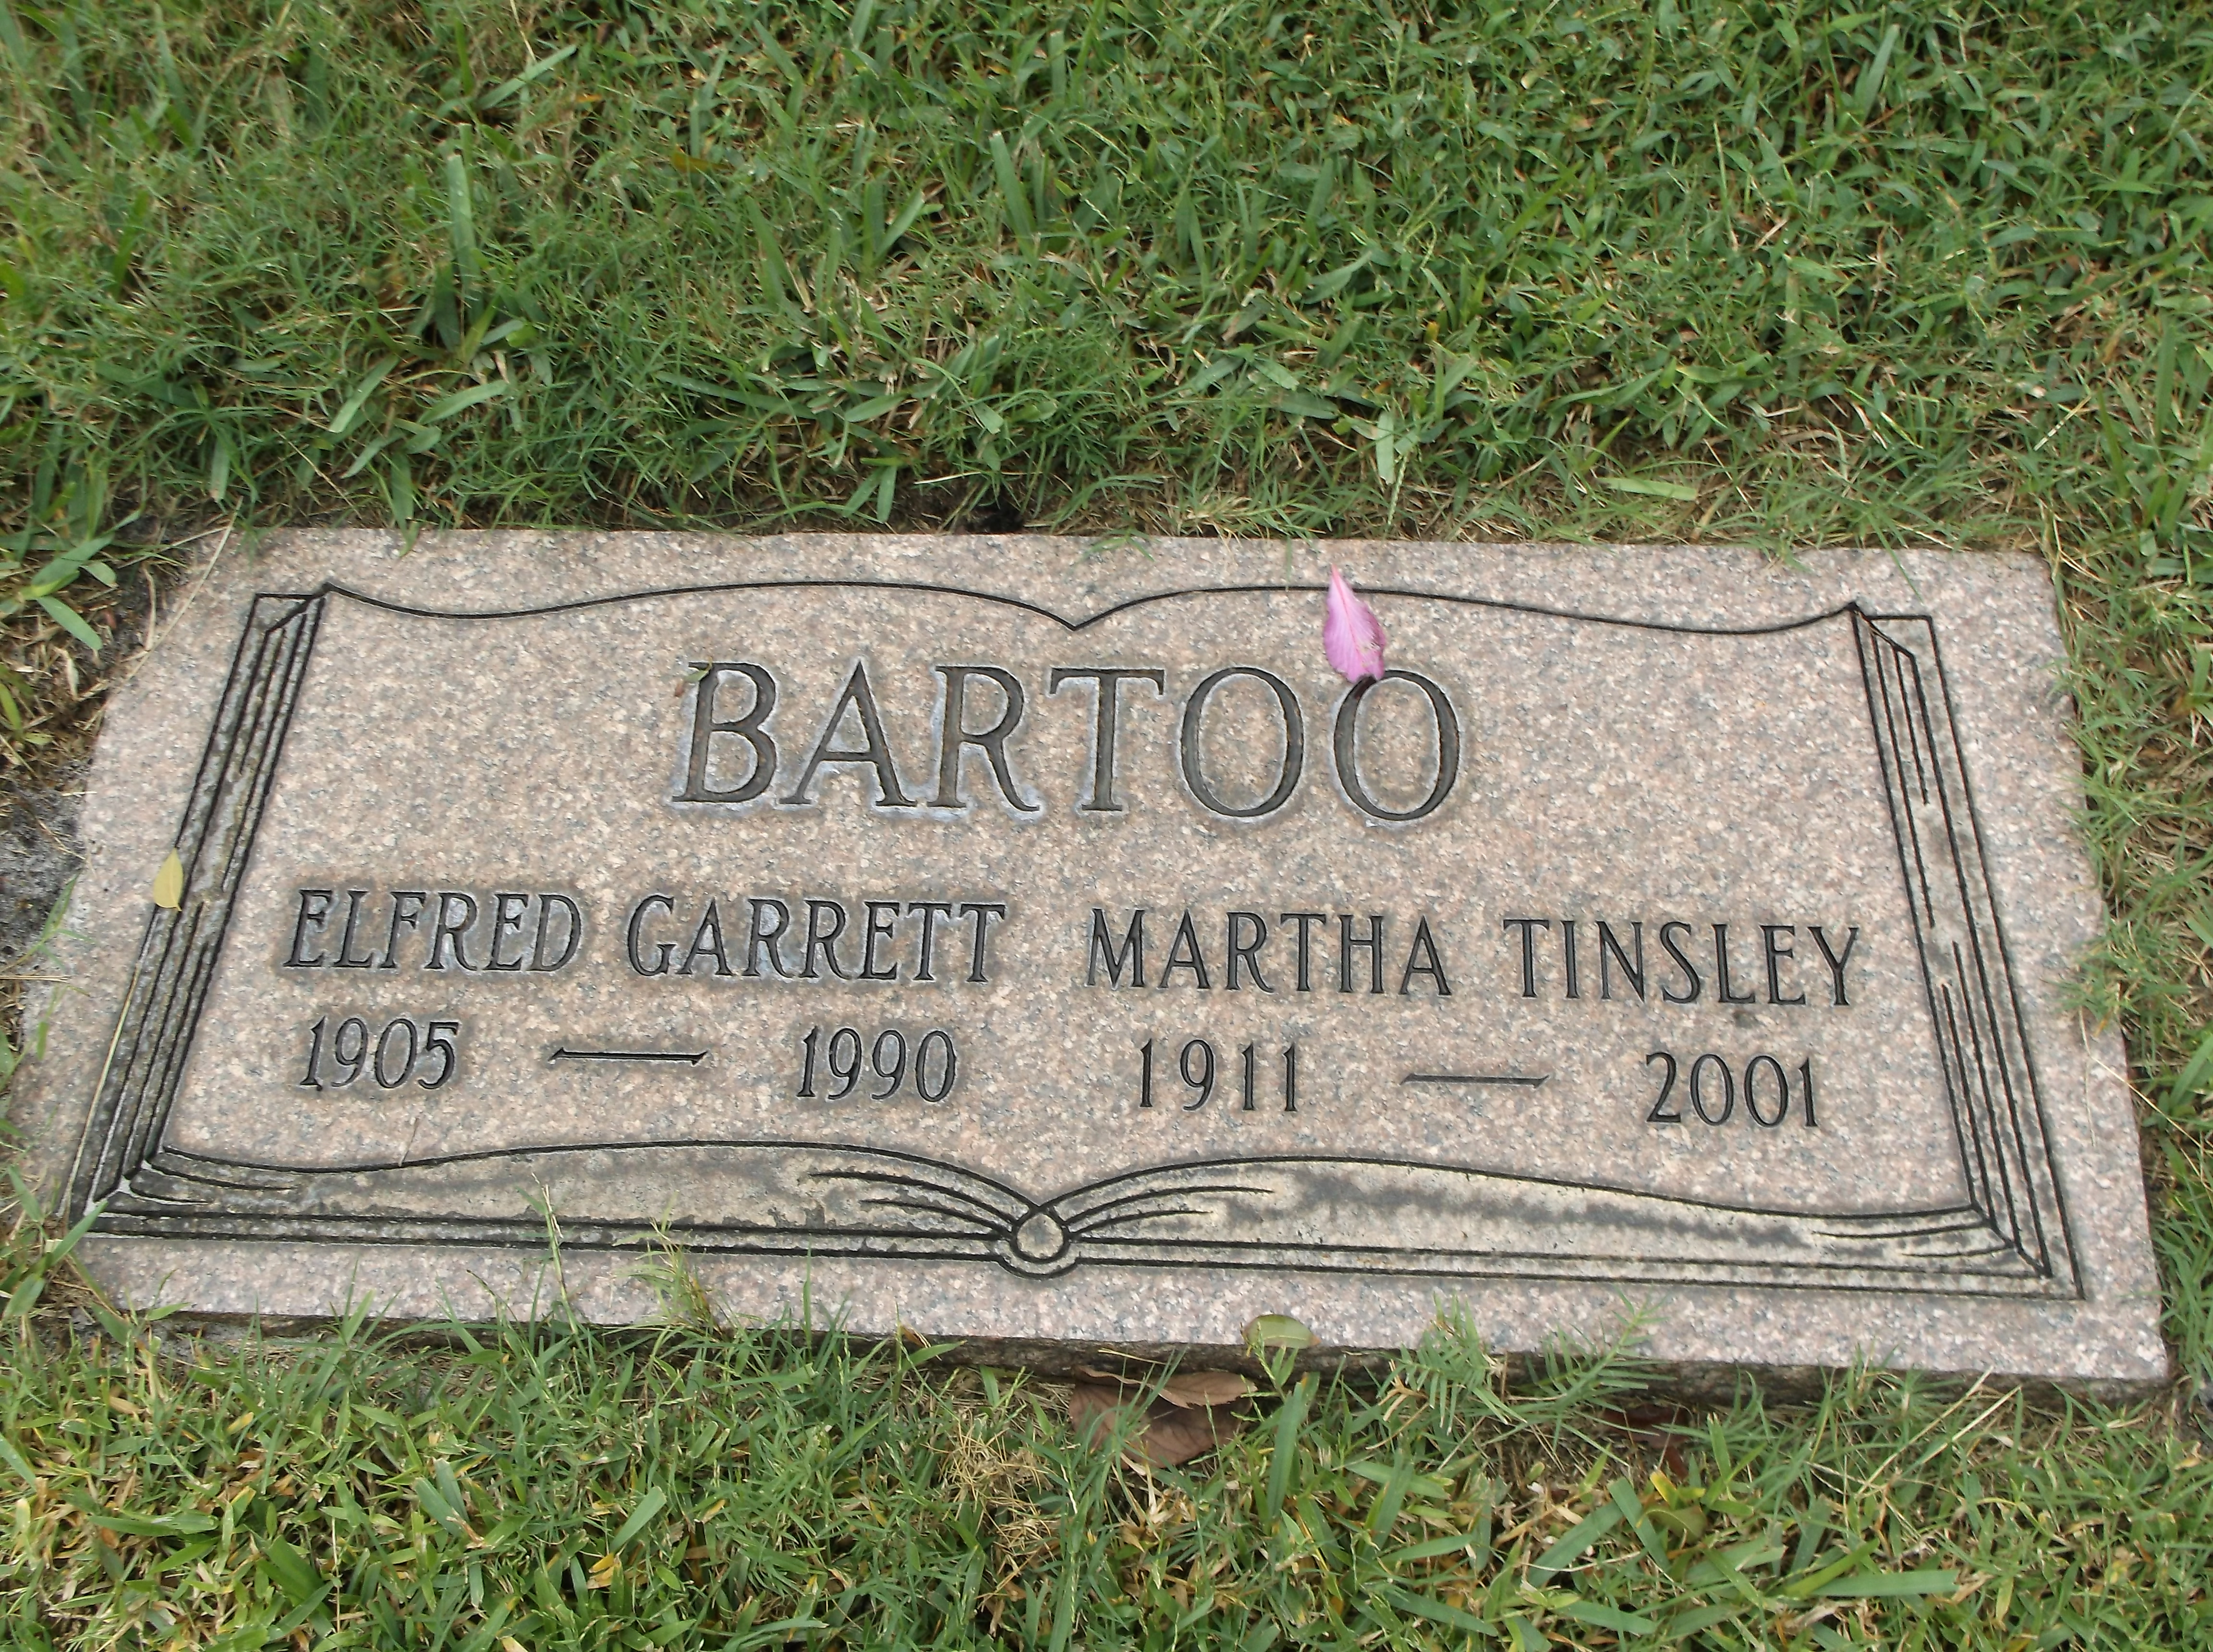 Martha Tinsley Bartoo